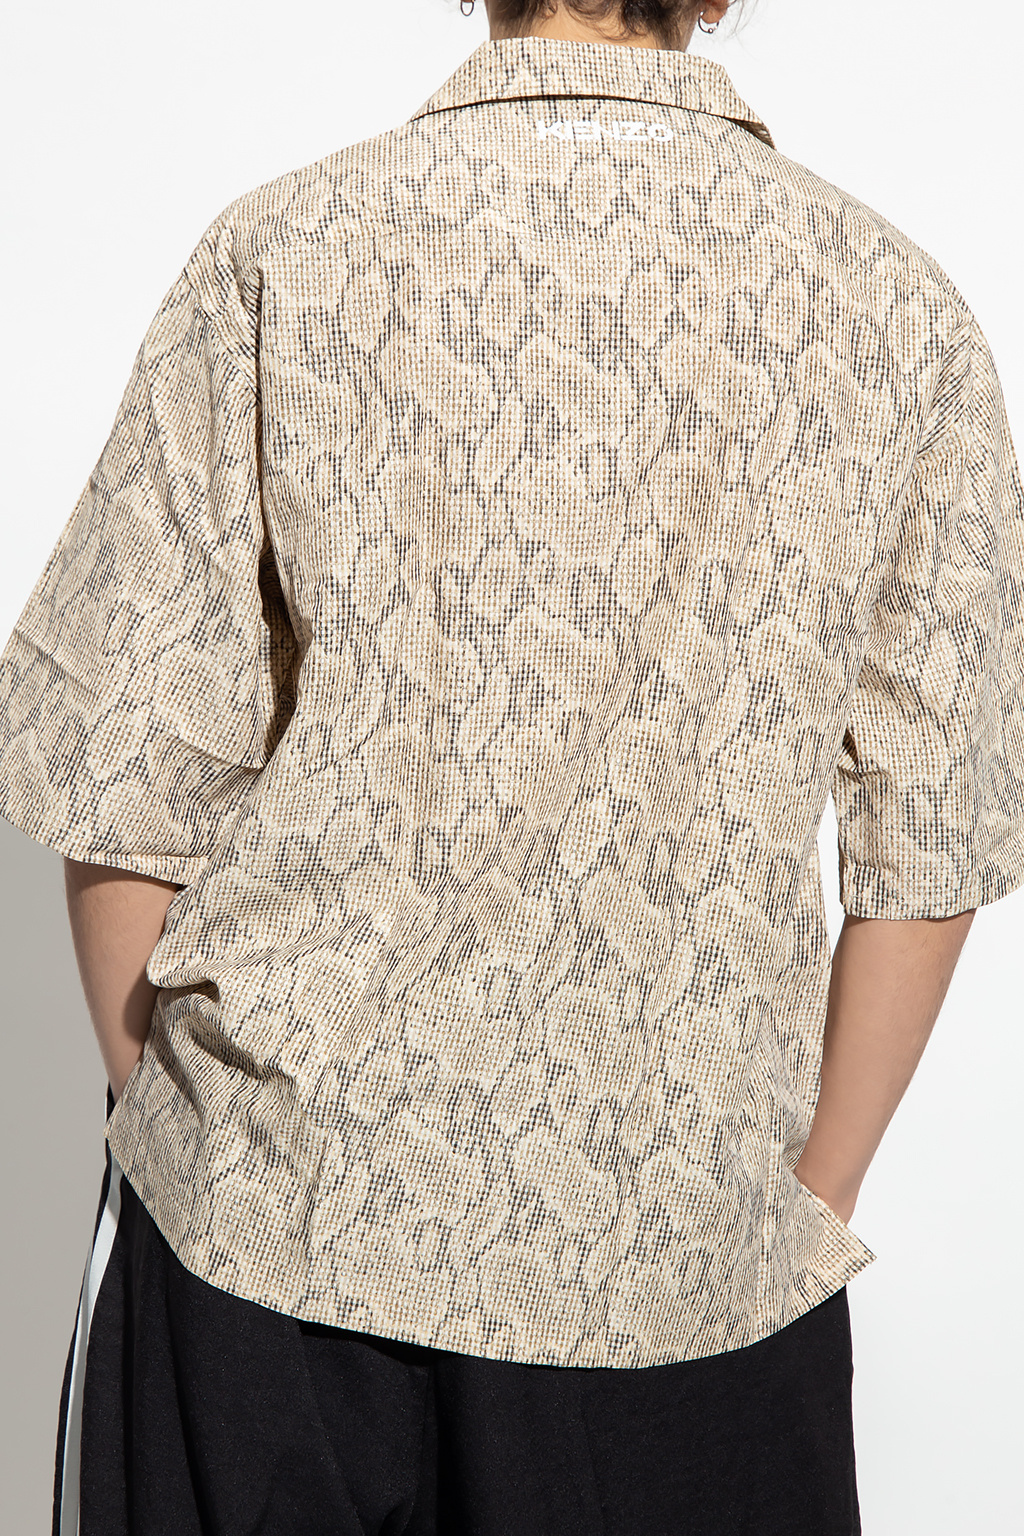 Kenzo Patterned shirt